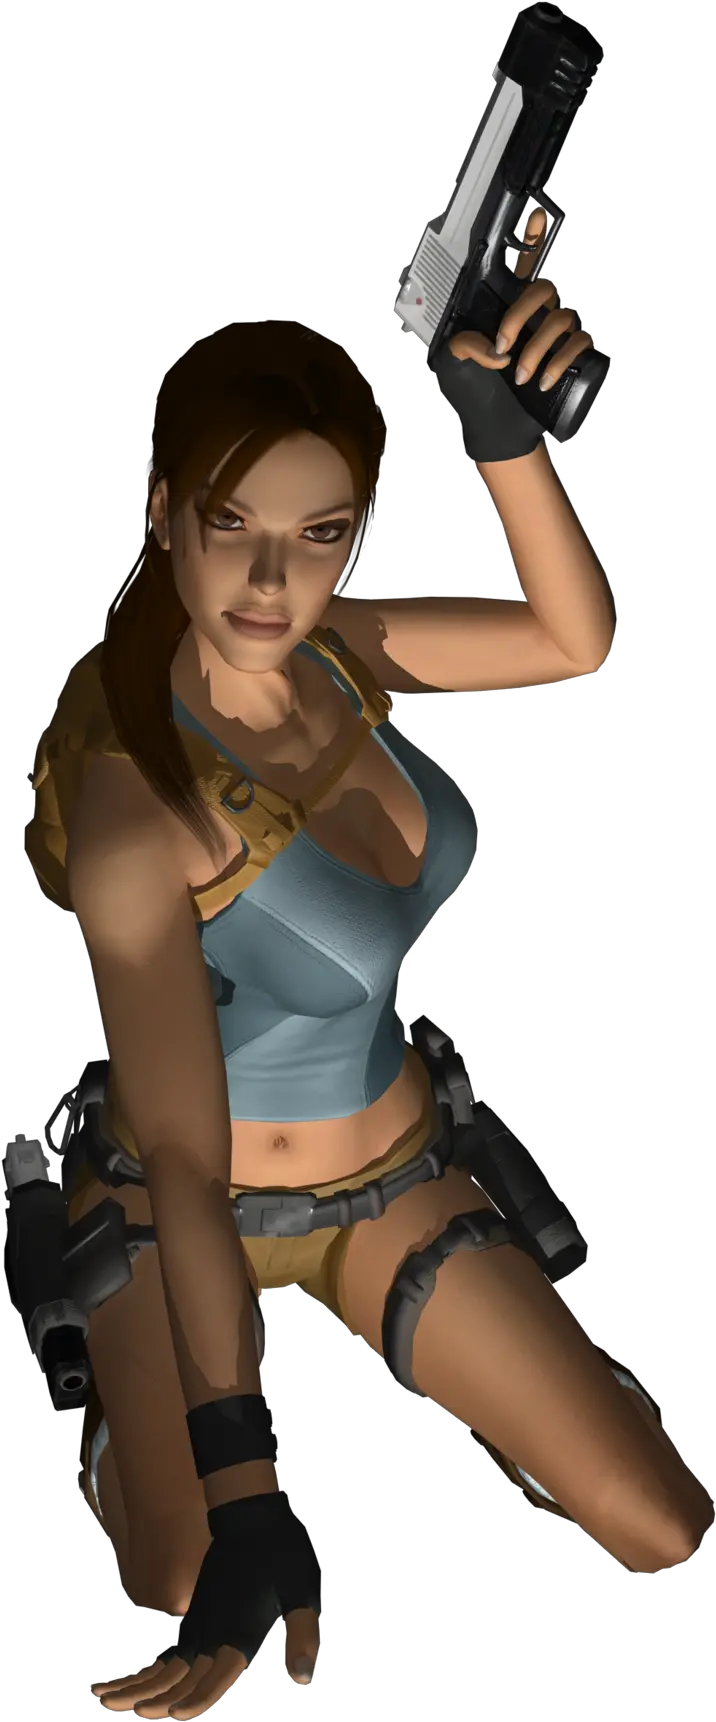 Download Lara Croft Lara Croft Png Lara Croft Transparent